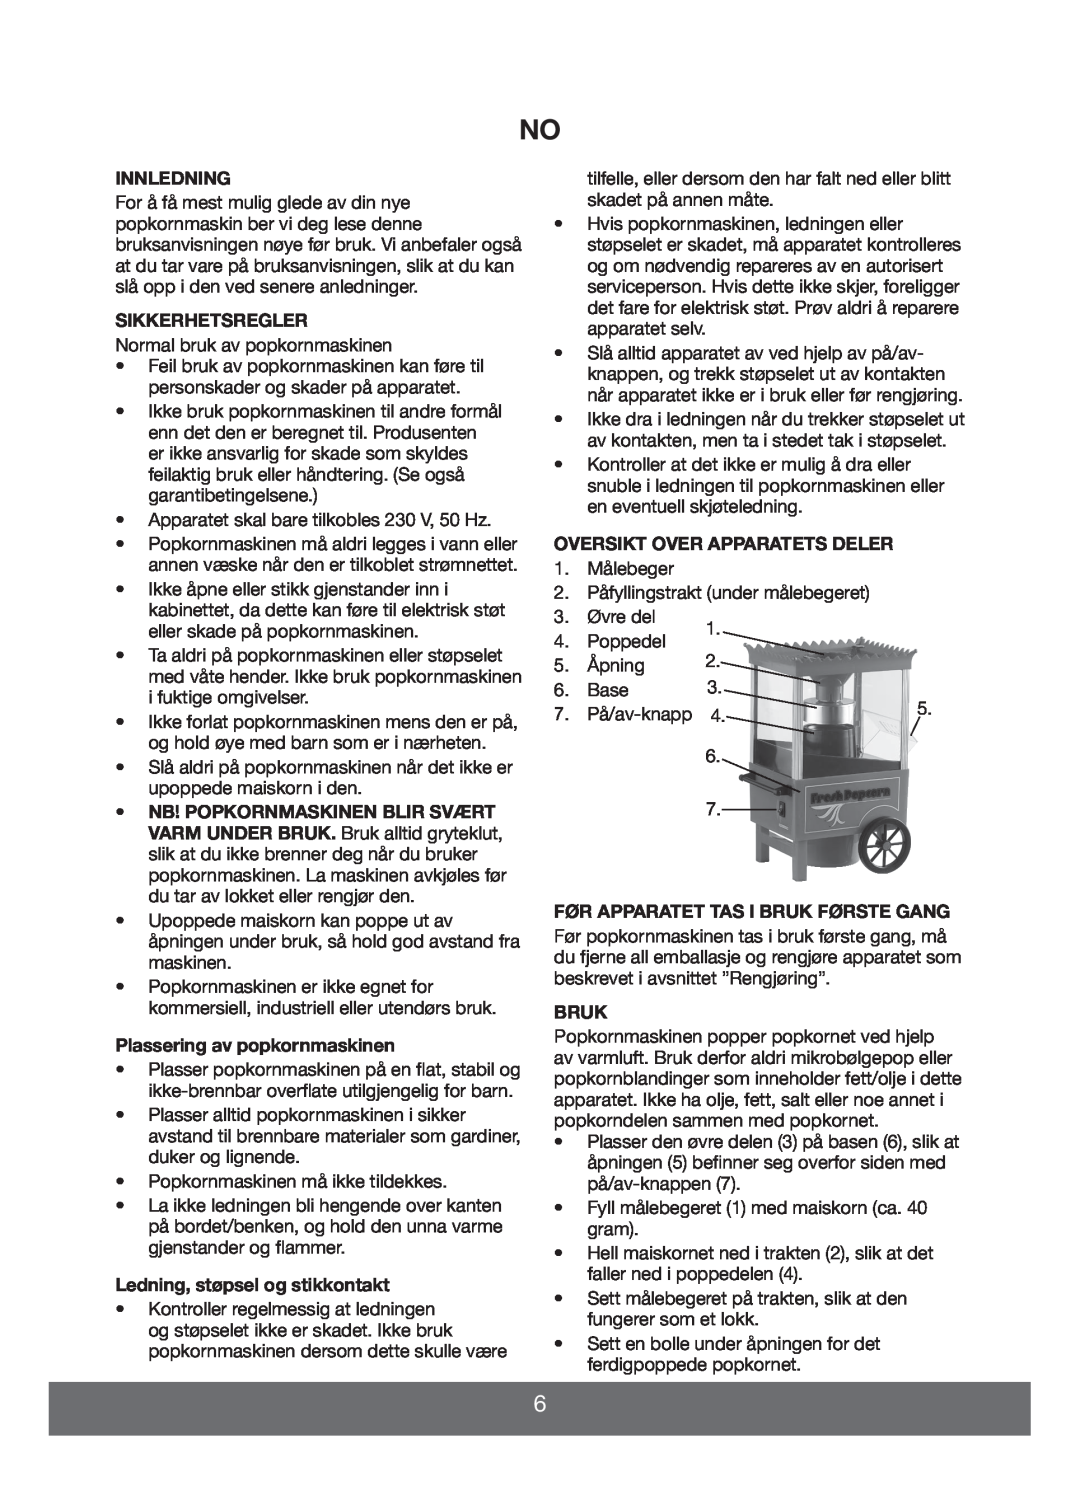 Melissa 643068 manual Innledning, Sikkerhetsregler, Plassering av popkornmaskinen, Ledning, støpsel og stikkontakt, Bruk 